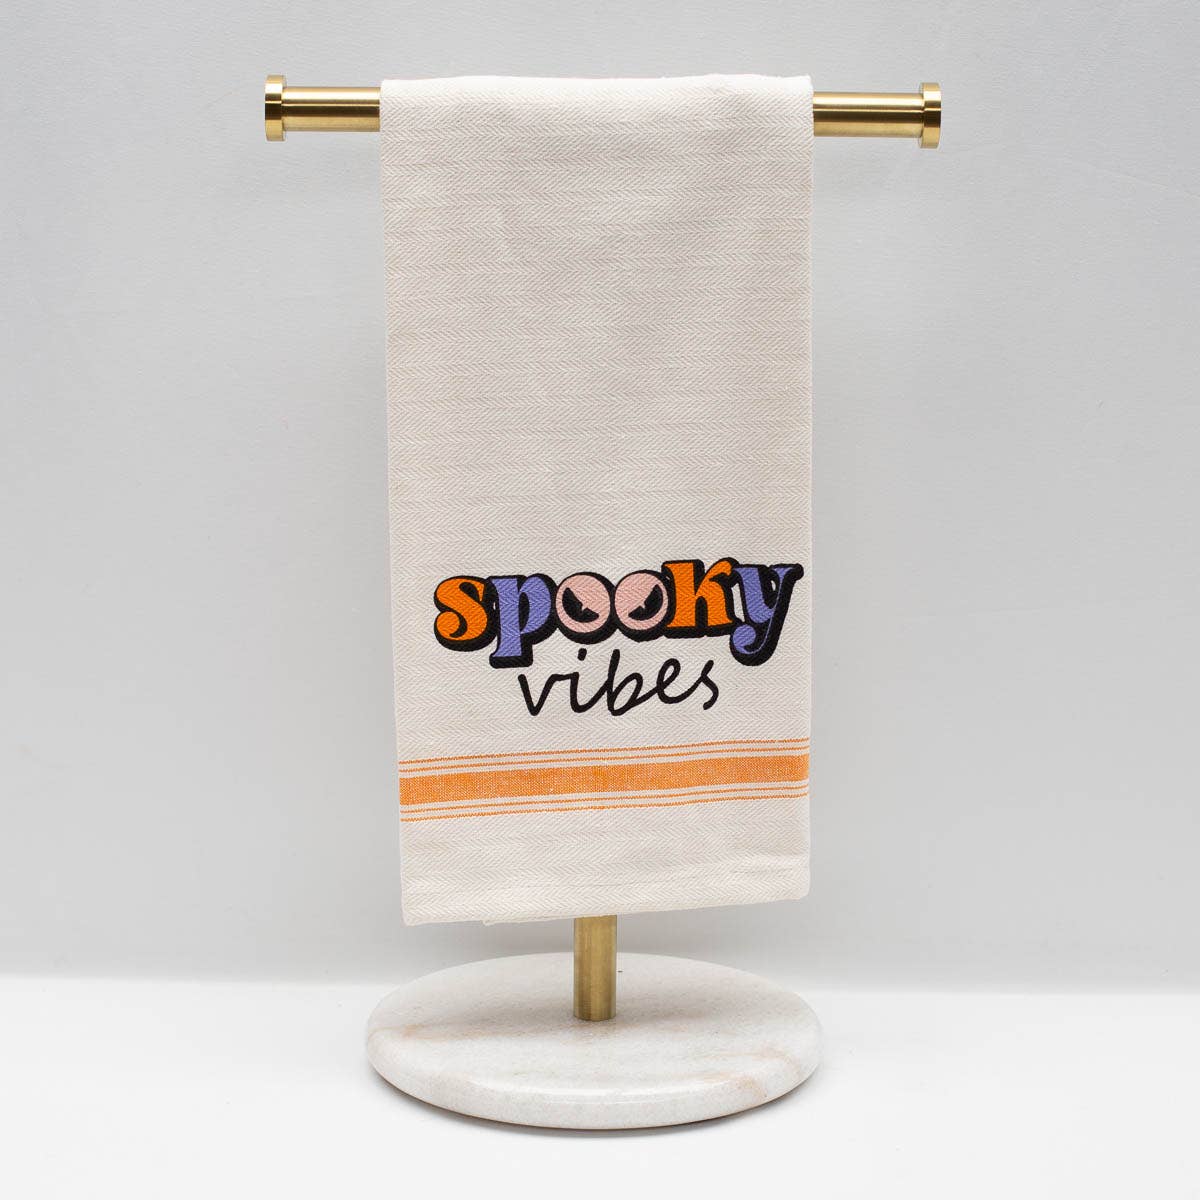 Spooky Vibes Hand Towel   Cream/Orange/Black   20x28